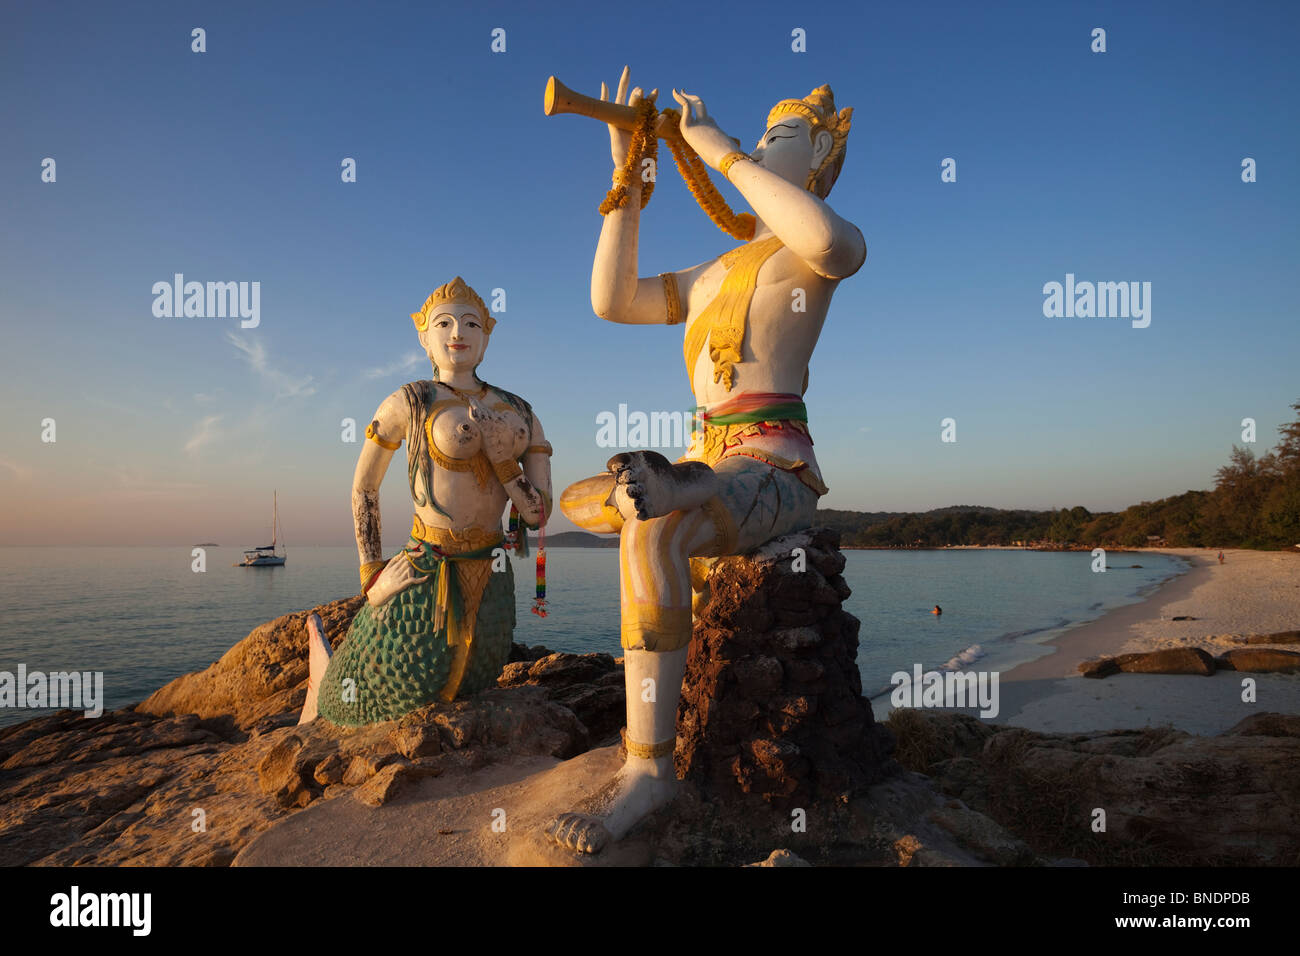 Le statue di un flautista e una sirena sulla spiaggia, spiaggia di Sai Kaew, Ko Samet, Thailandia Foto Stock